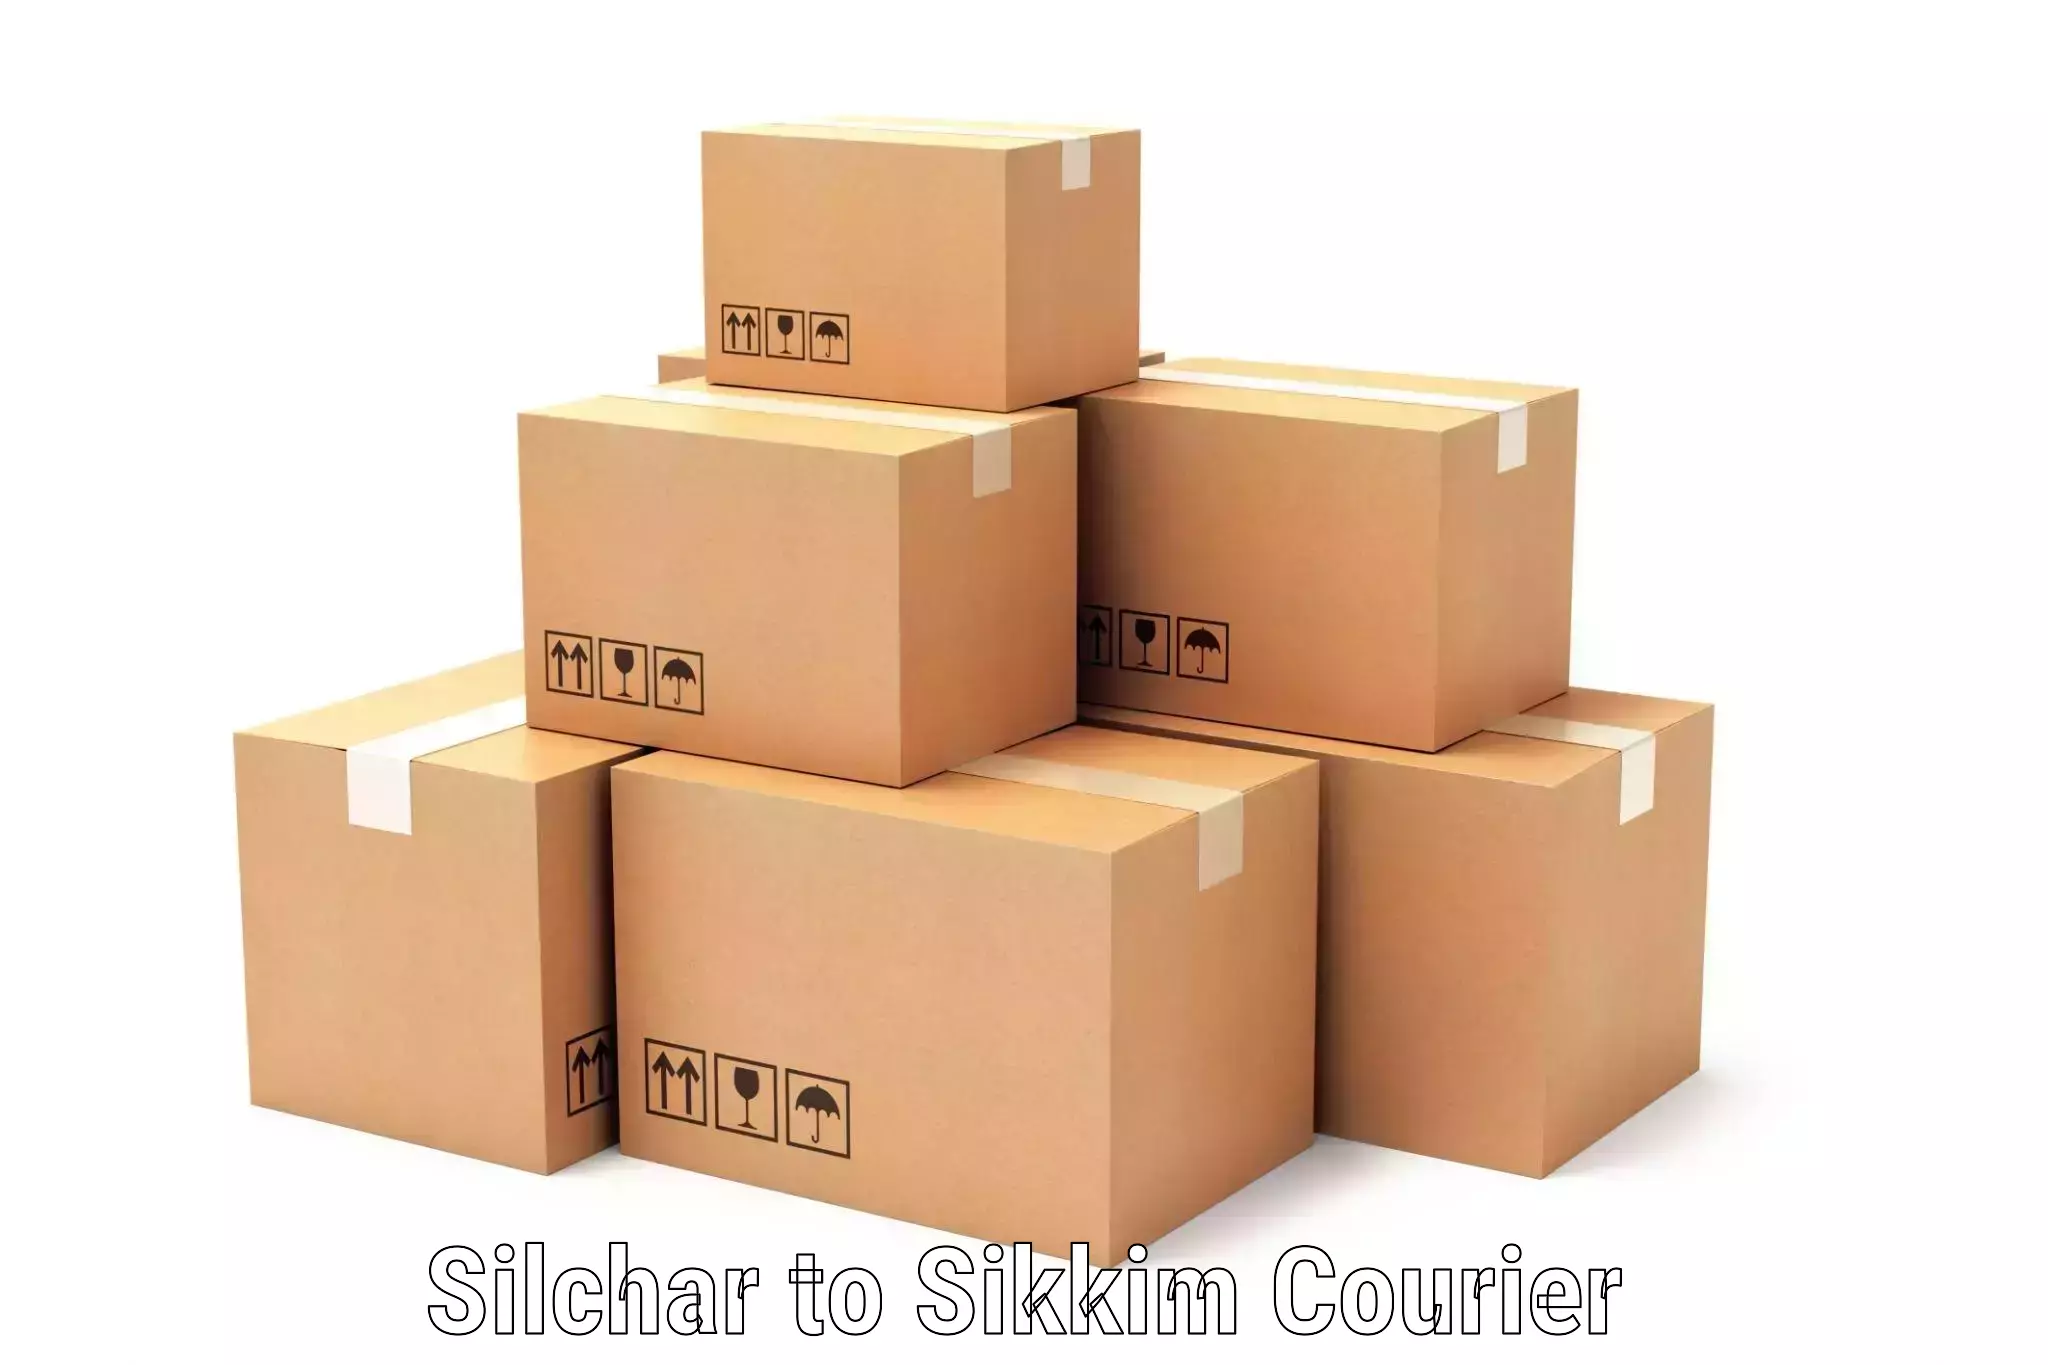 Quick dispatch service Silchar to Singtam